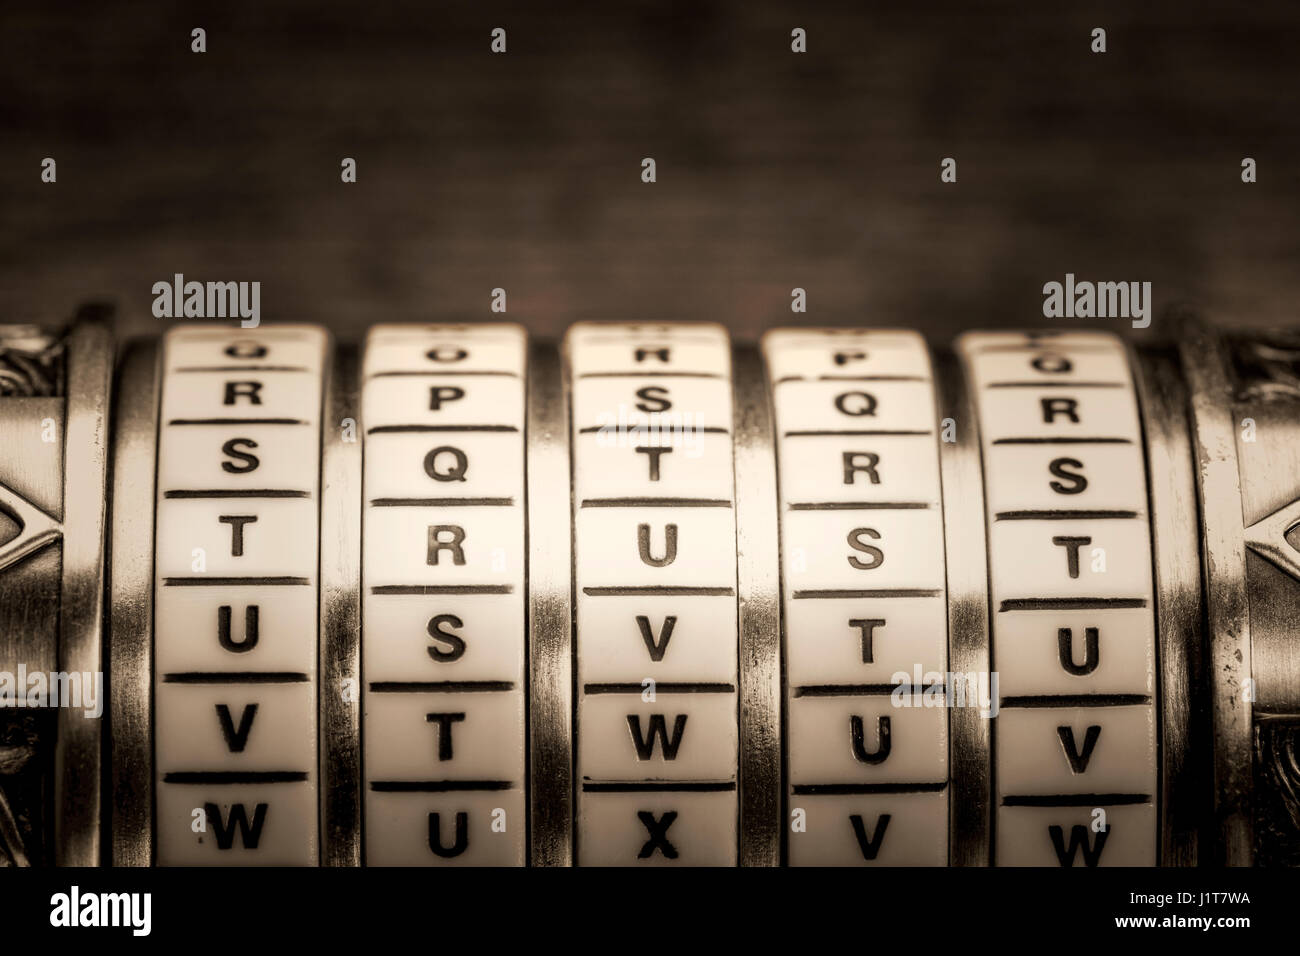 Vertrauen Wort als Passwort Kombination Puzzle Box mit Ringe aus Platin getönten Buchstaben, schwarz / weiß Bild Stockfoto